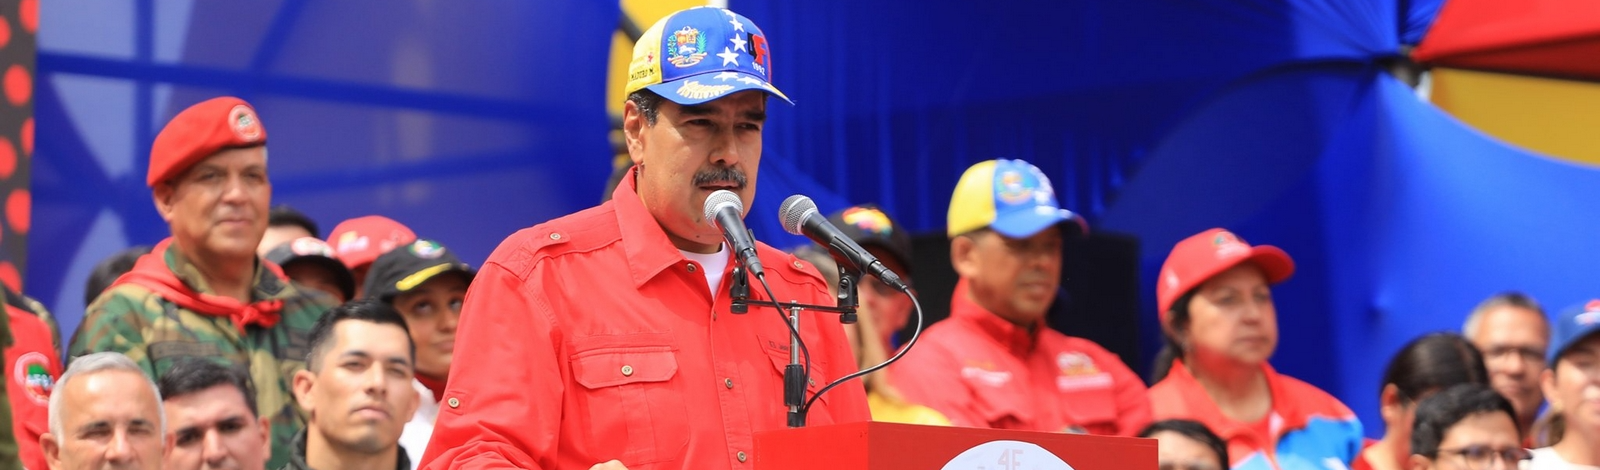 Alvo de sanções há anos, Venezuela se fortalece e confronta nova ofensiva dos EUA